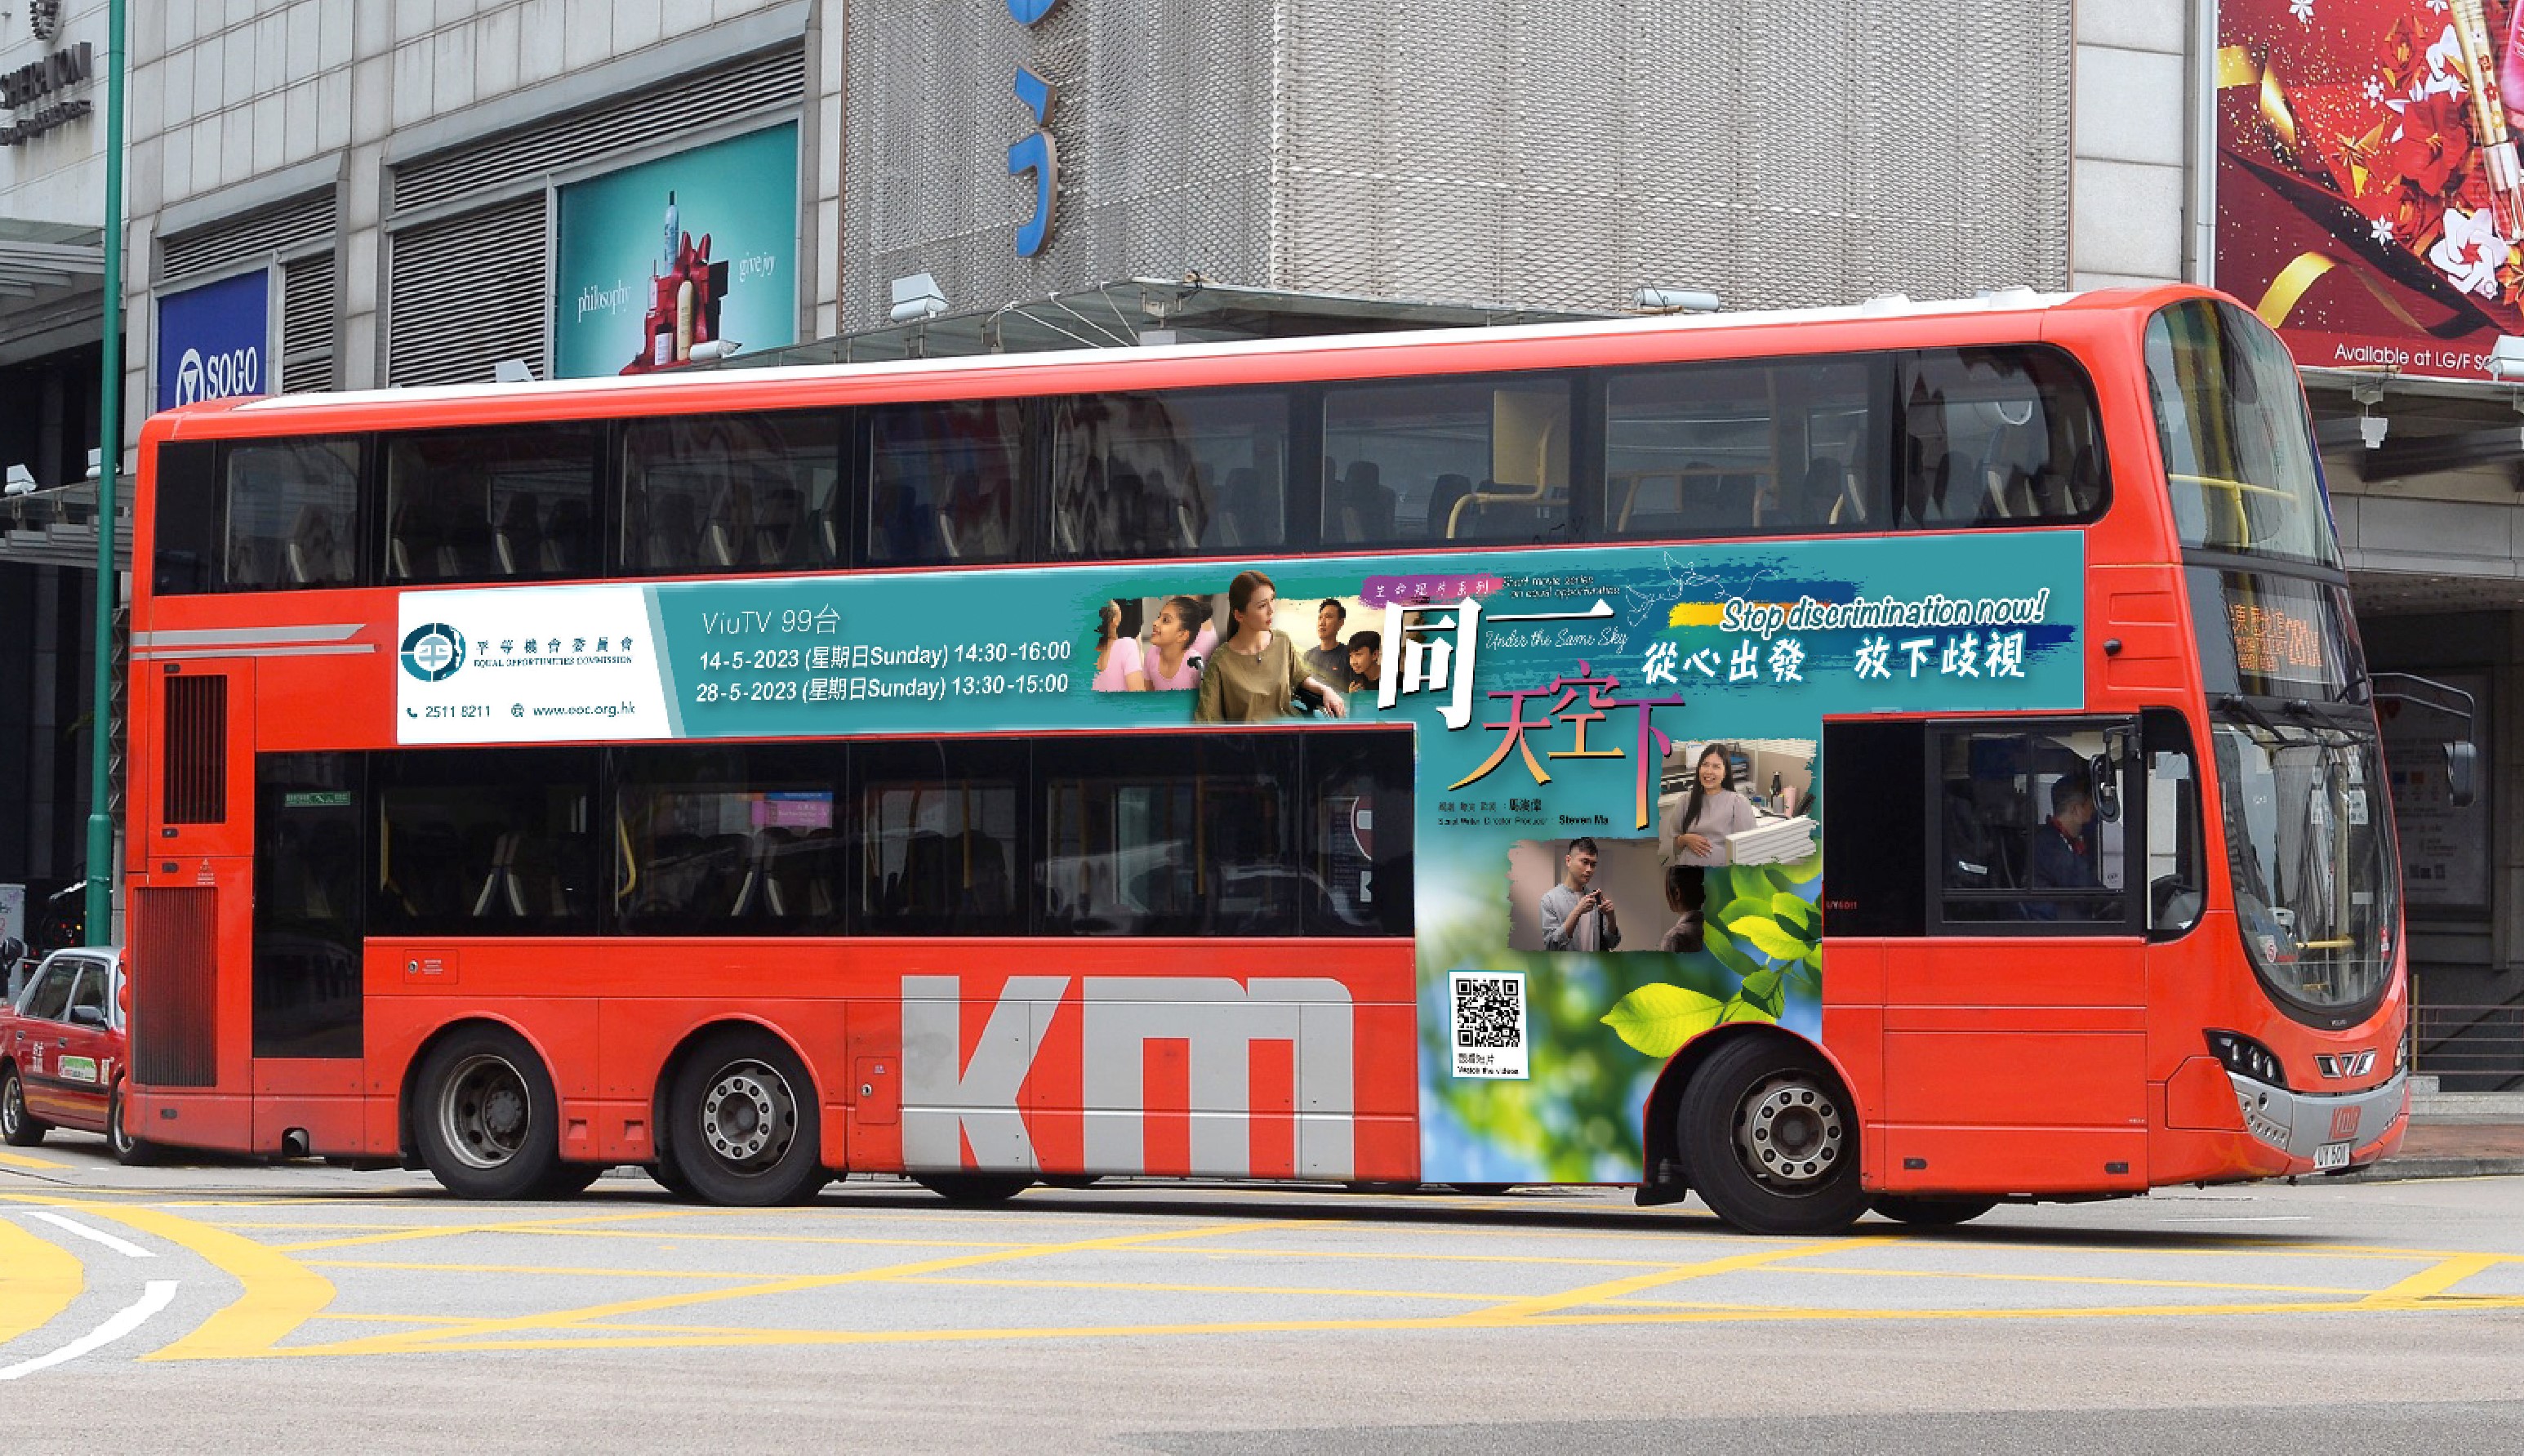 《同一天空下》生命短片系列: 巴士車身廣告